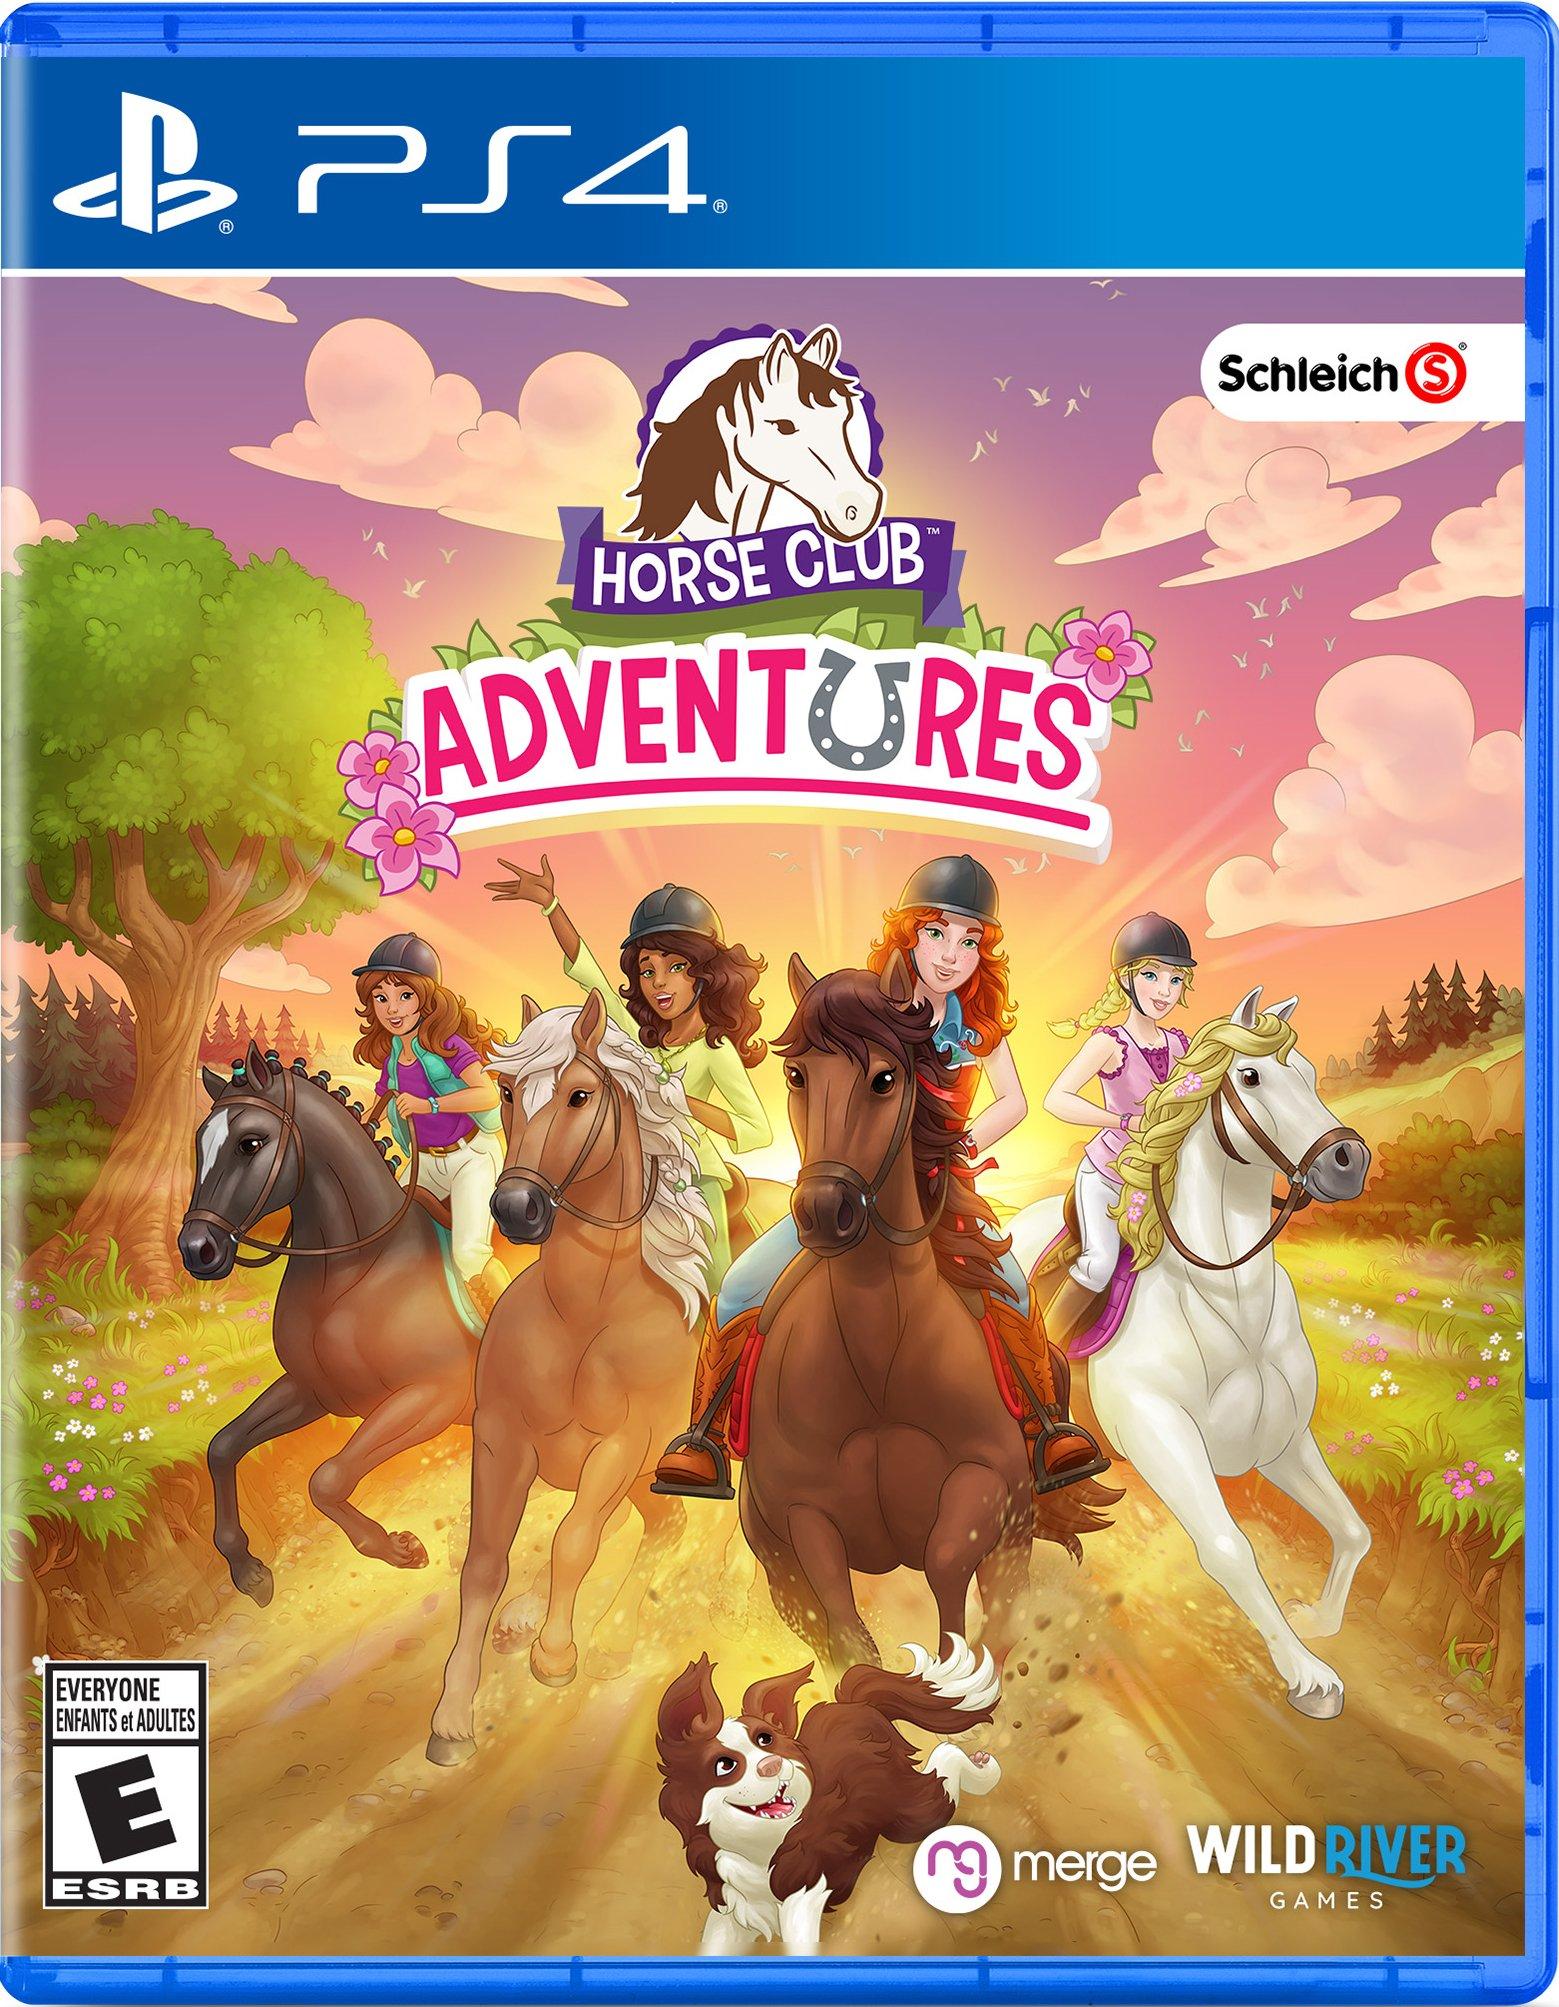 Horse Club GameStop 4 - 4 Adventures PlayStation | PlayStation 